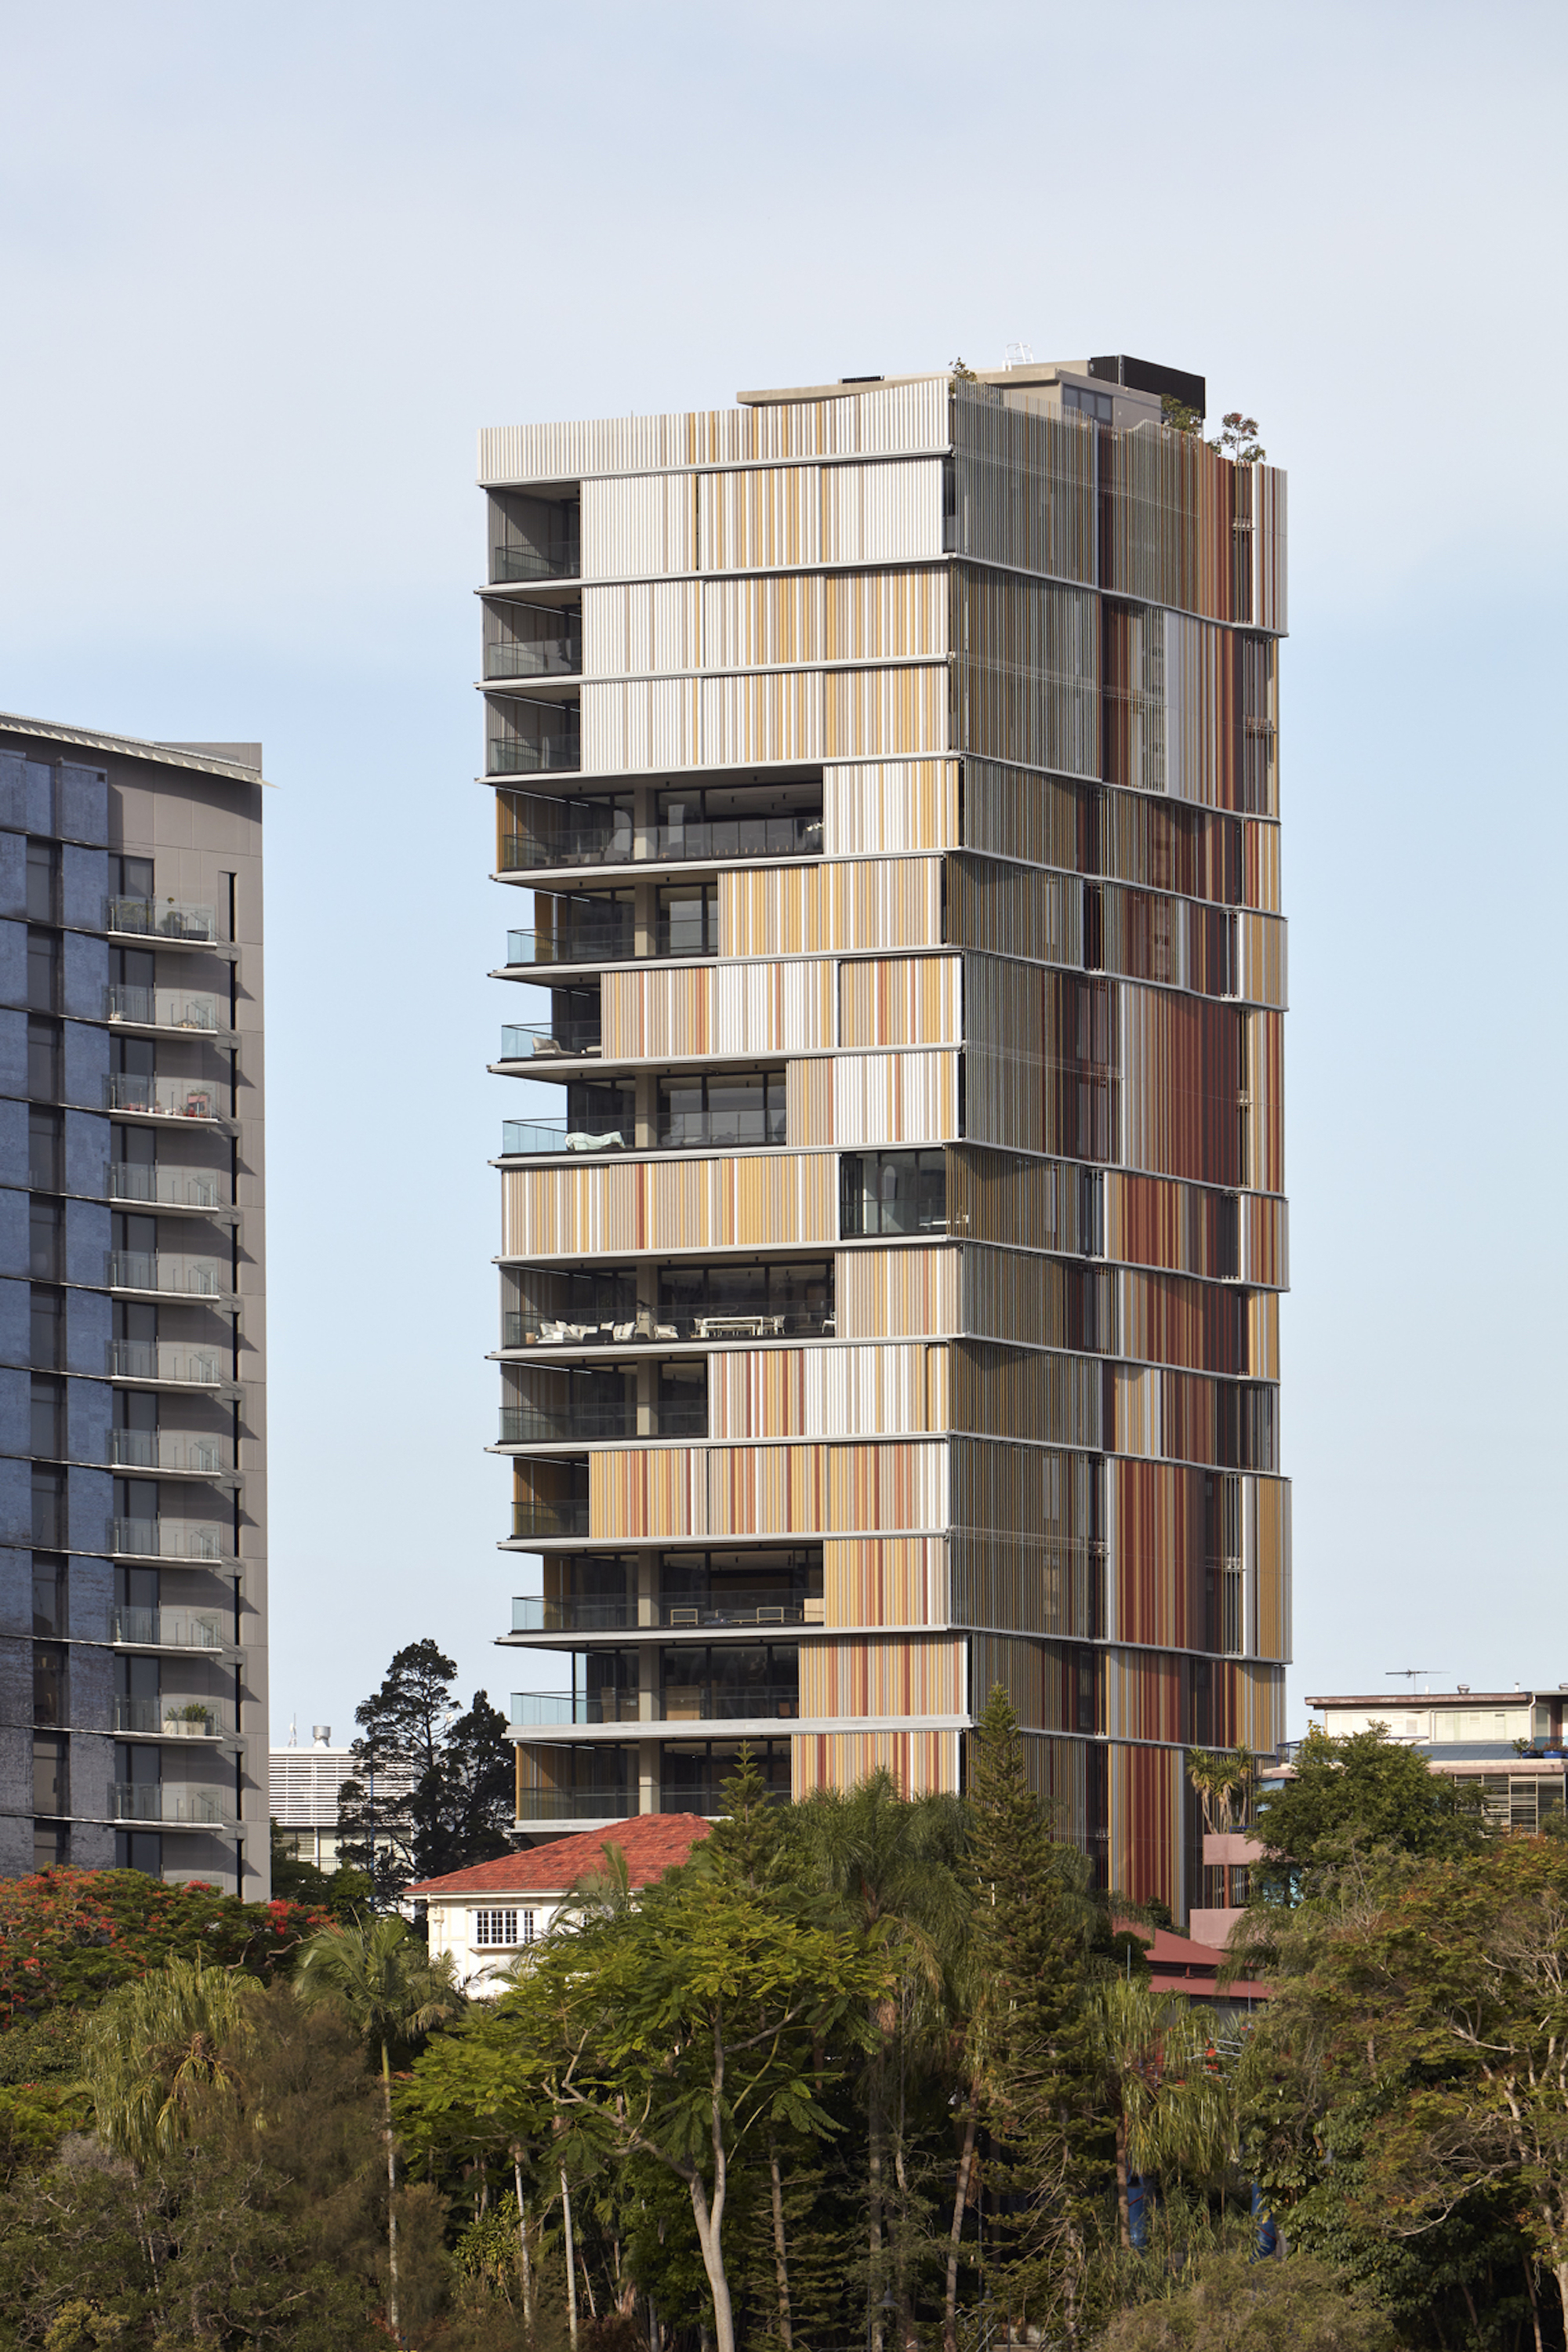 澳大利亚·Walan公寓住宅---bureau^proberts